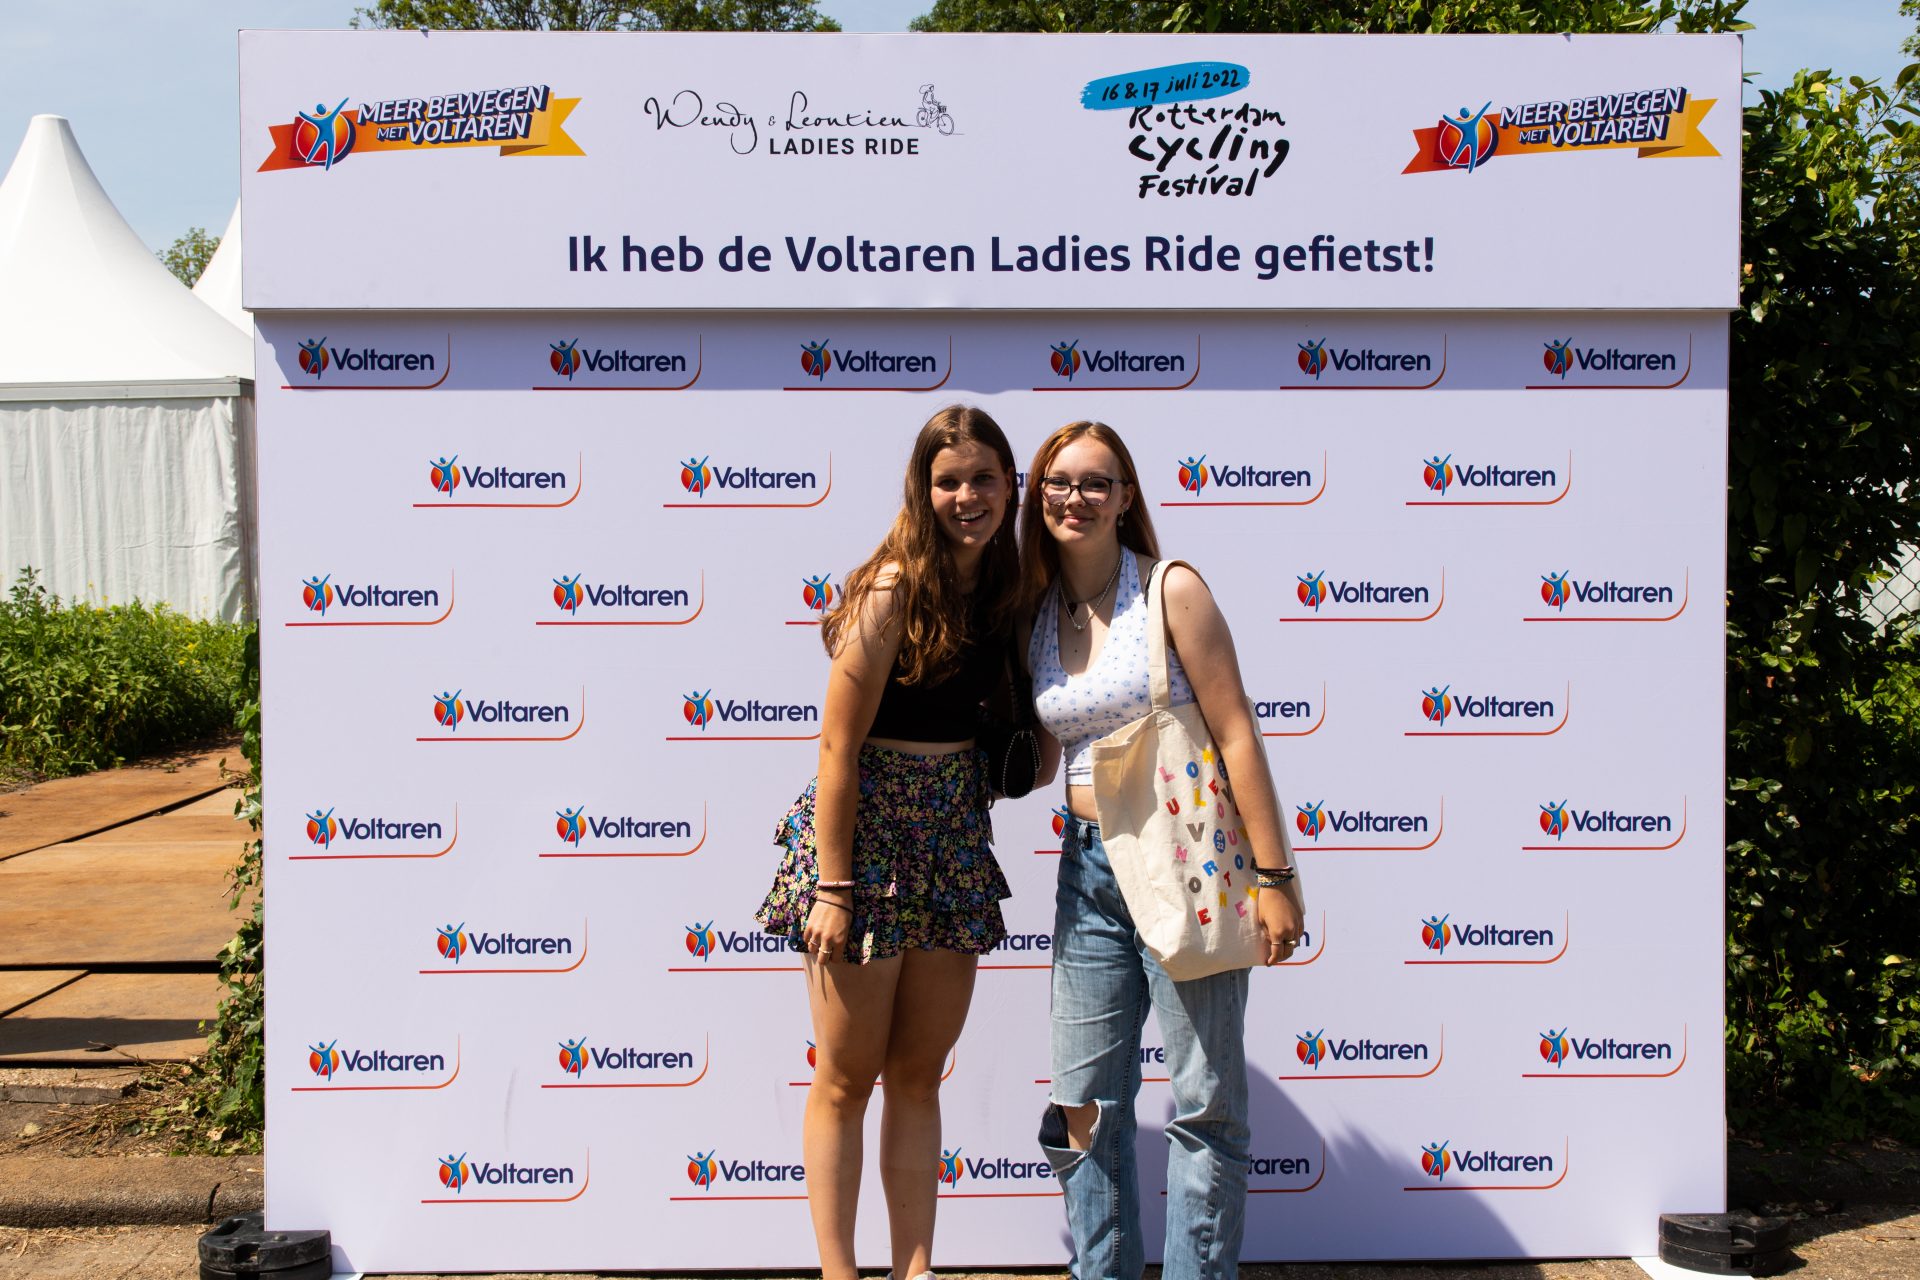 LADIES RIDE VOLTAREN BACKGROUND PHOTOS 56 of 64 Ladies Ride 2022